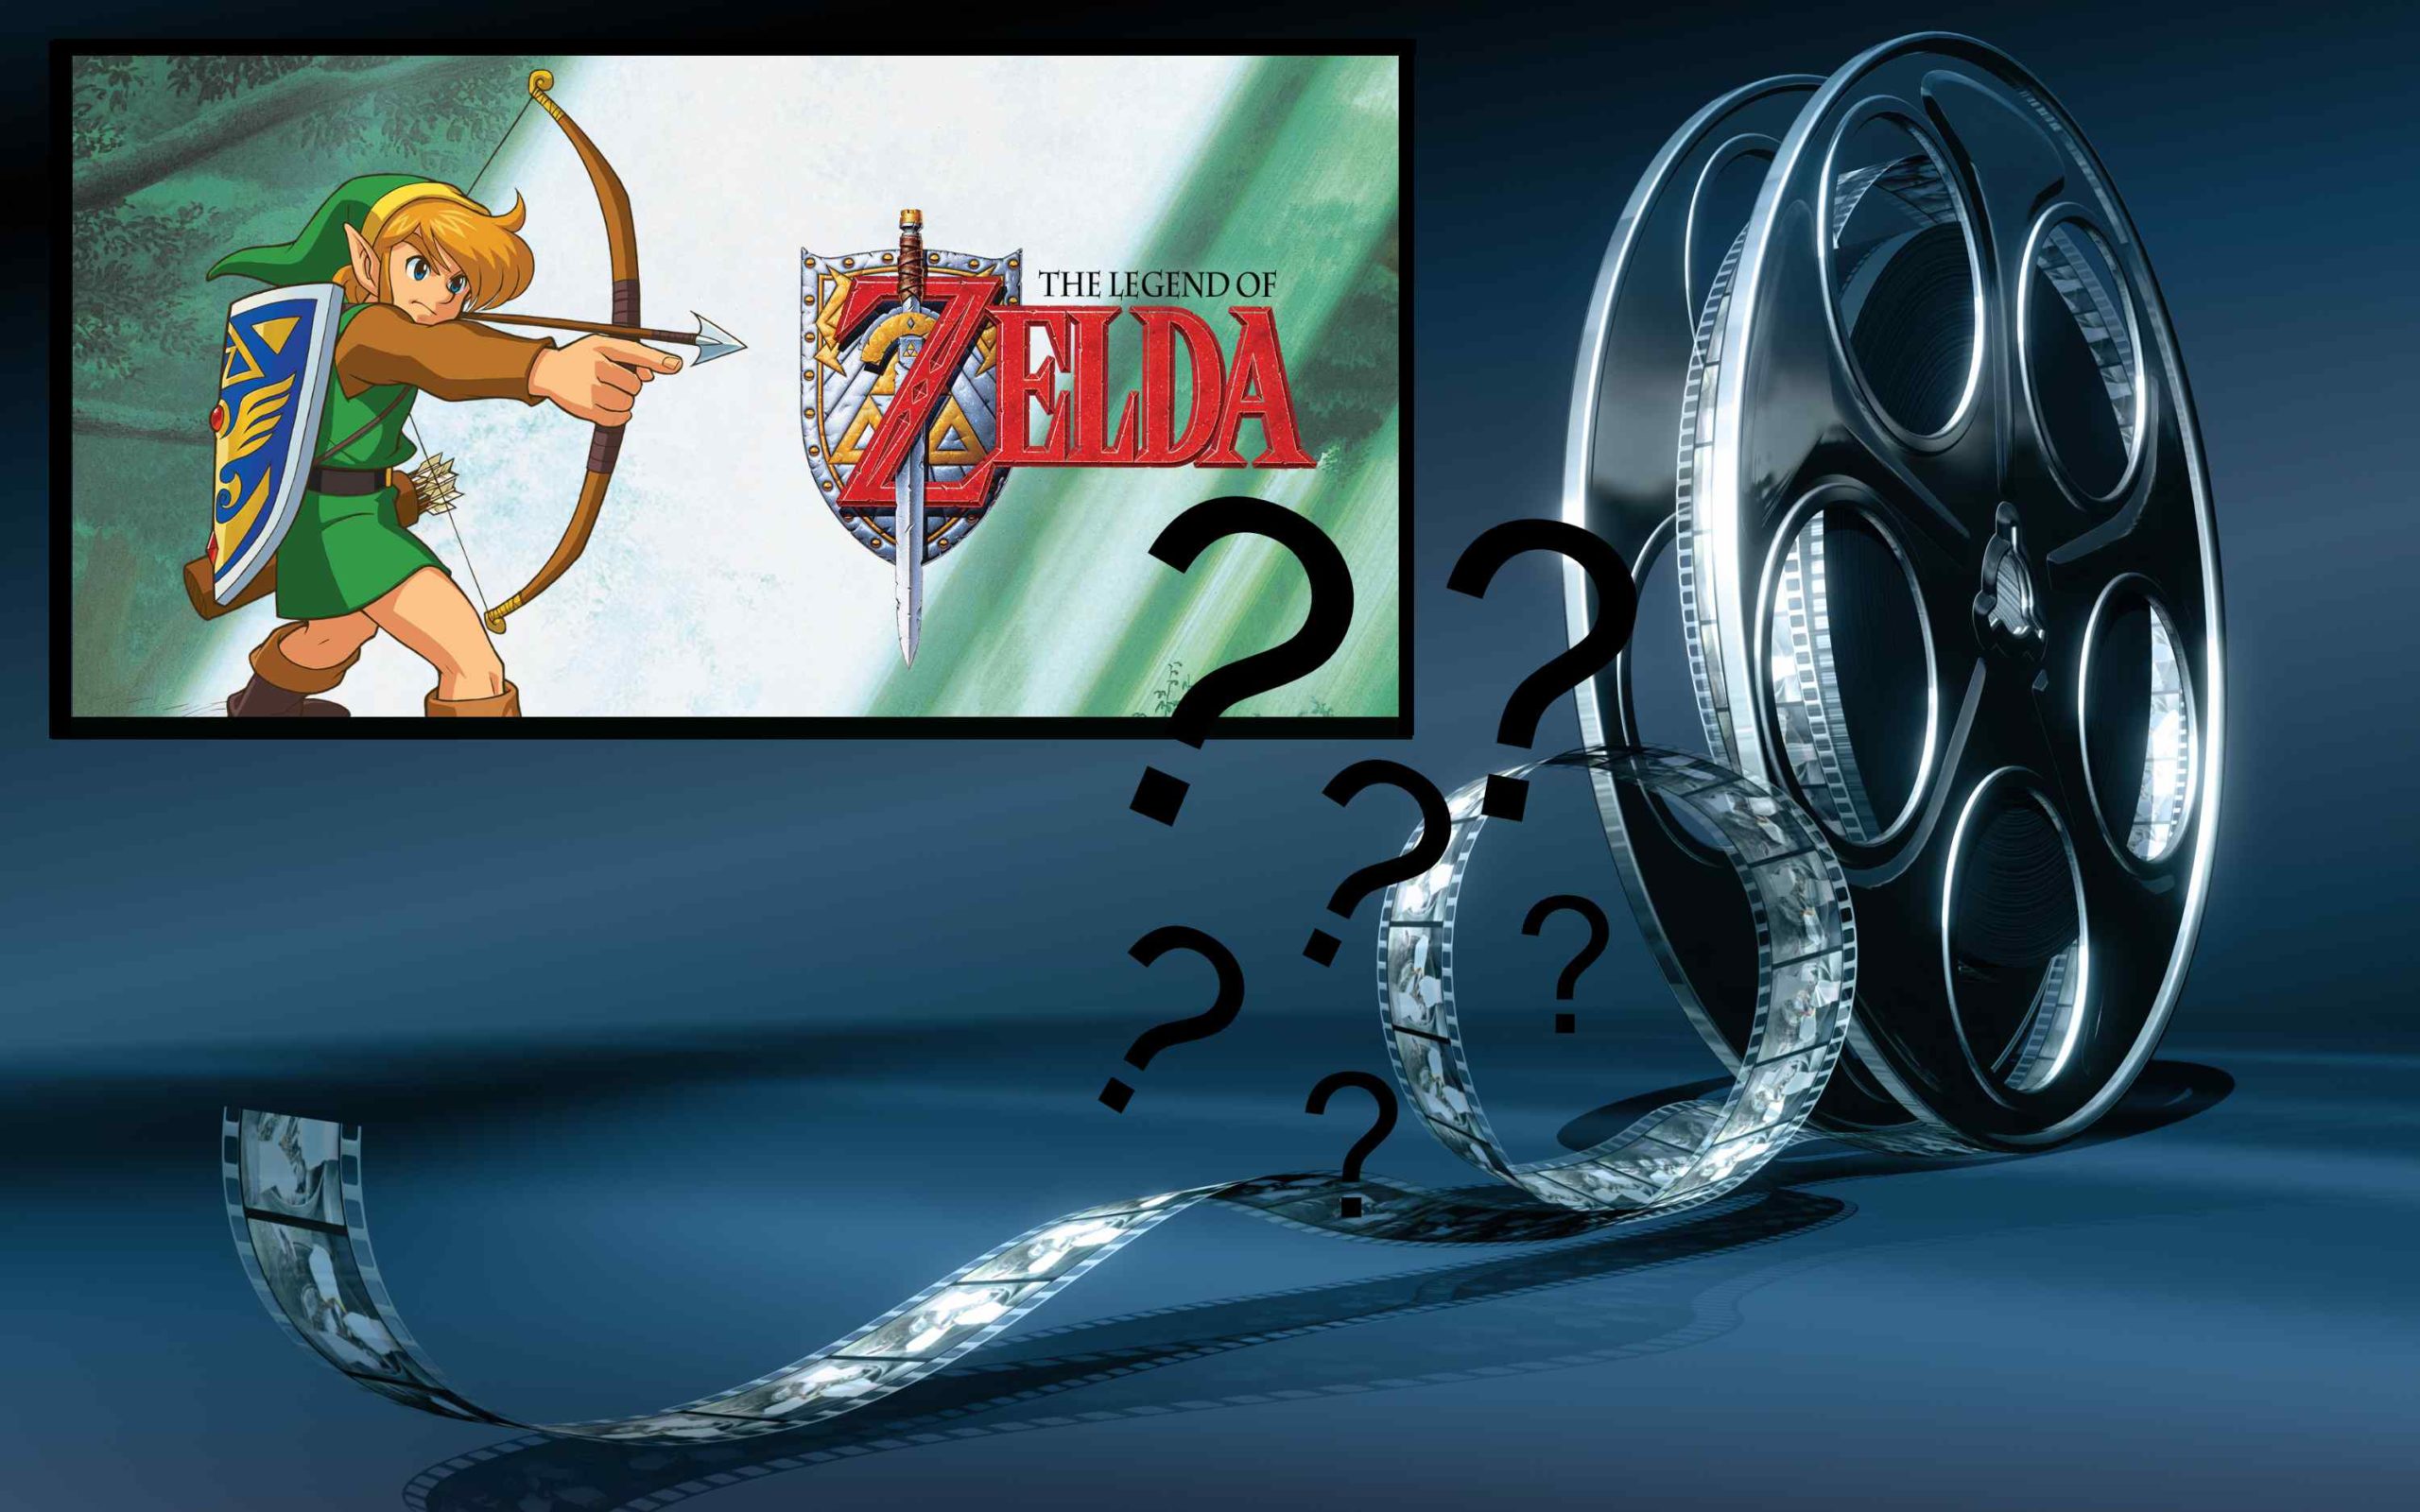 The Legend of Zelda: Link bald auf der großen Leinwand?